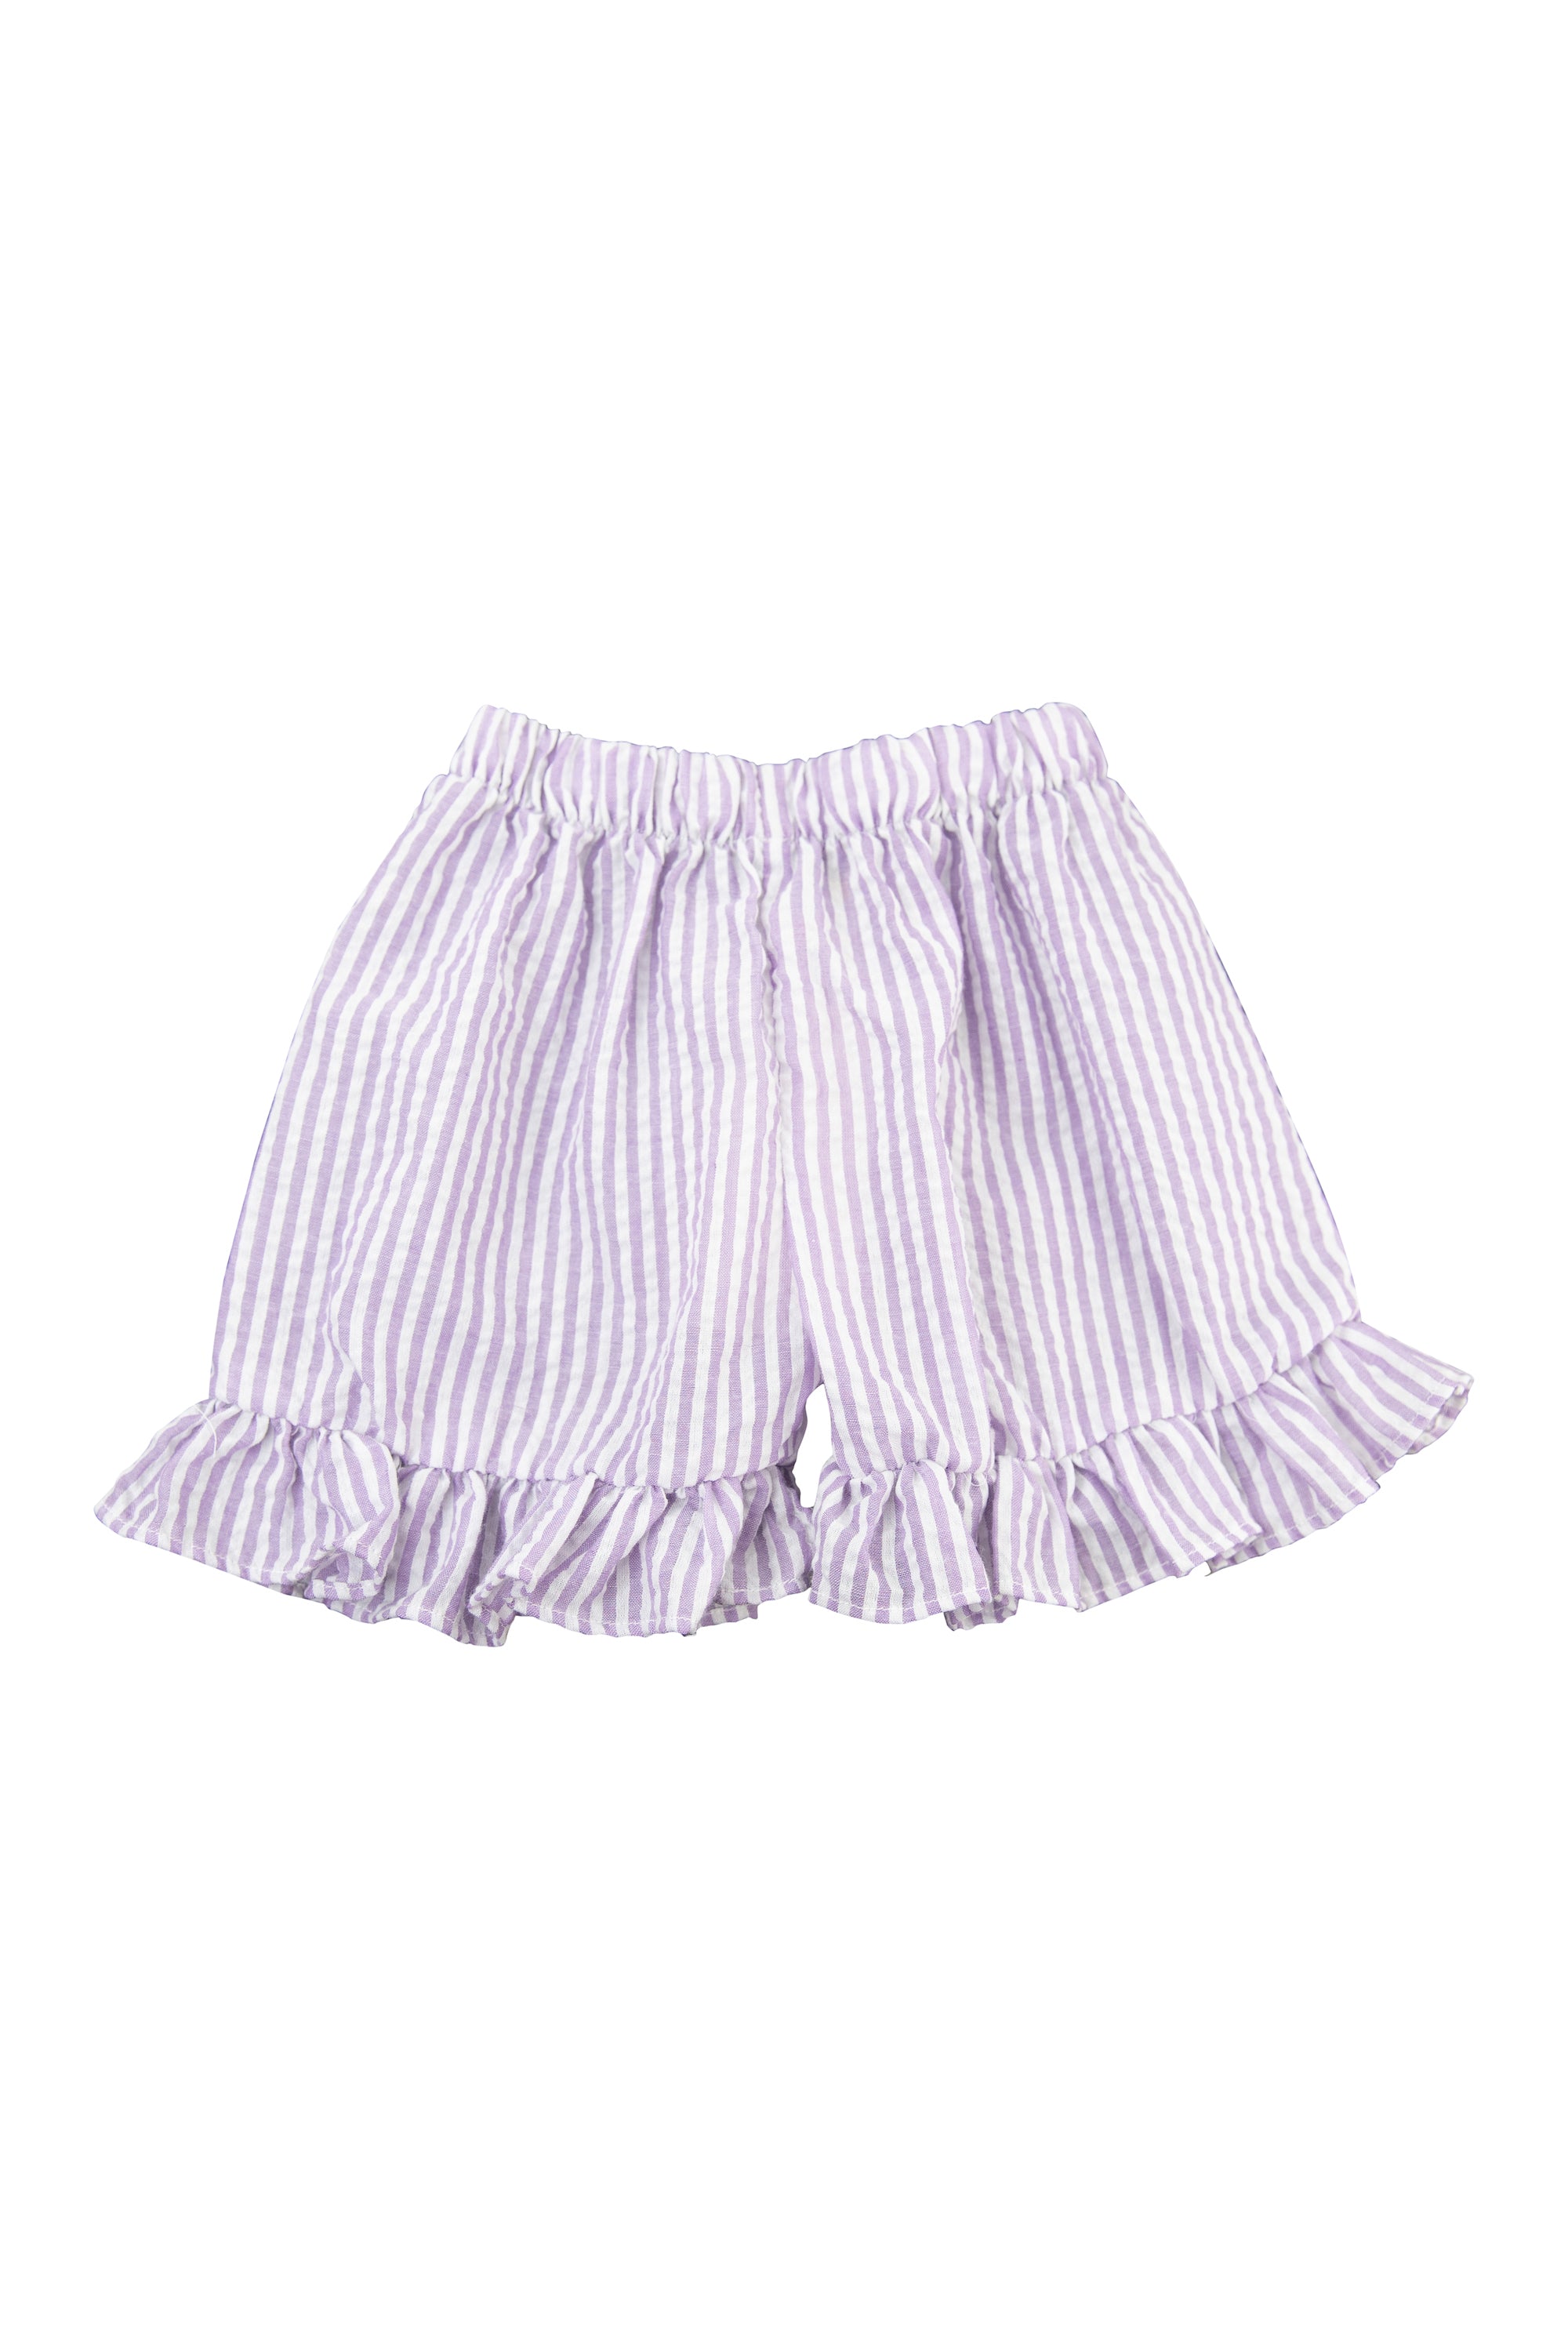 Girls Lavender Seersucker Shorts